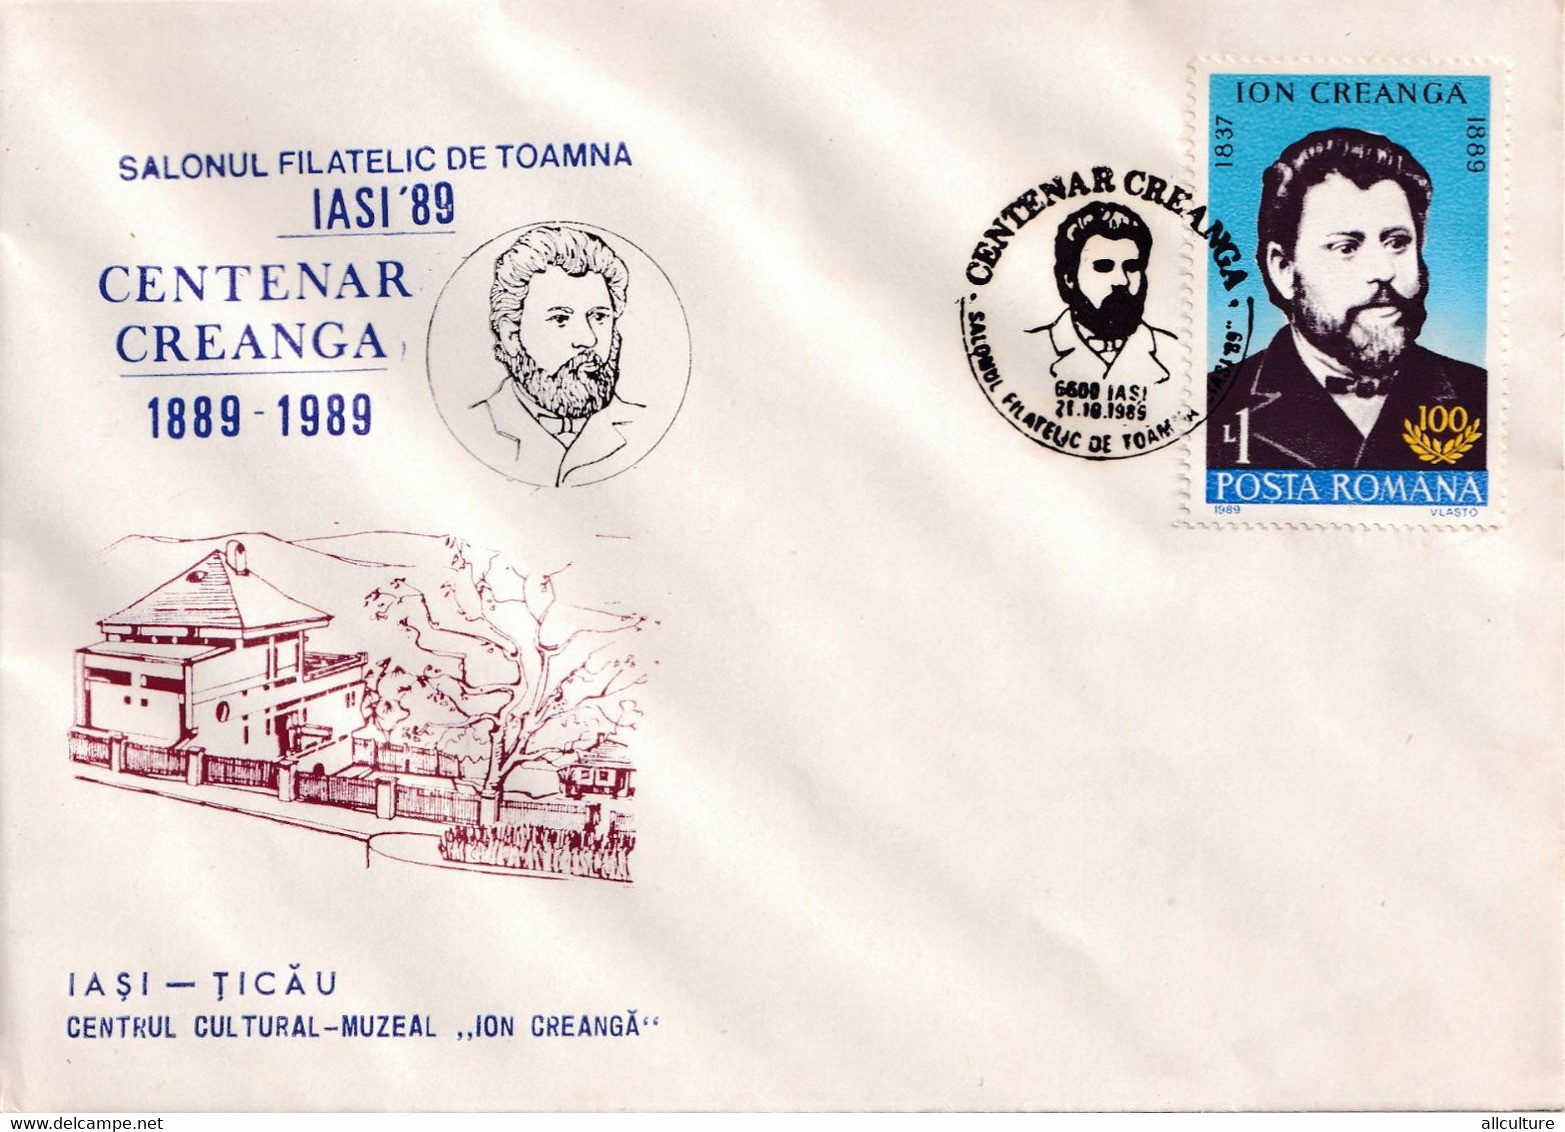 A3019 - Salonul Filatelic Iasi '89, Centenar Creanga, Iasi Ticau 1989 Republica Socialista Romania Posta Romana - Briefe U. Dokumente